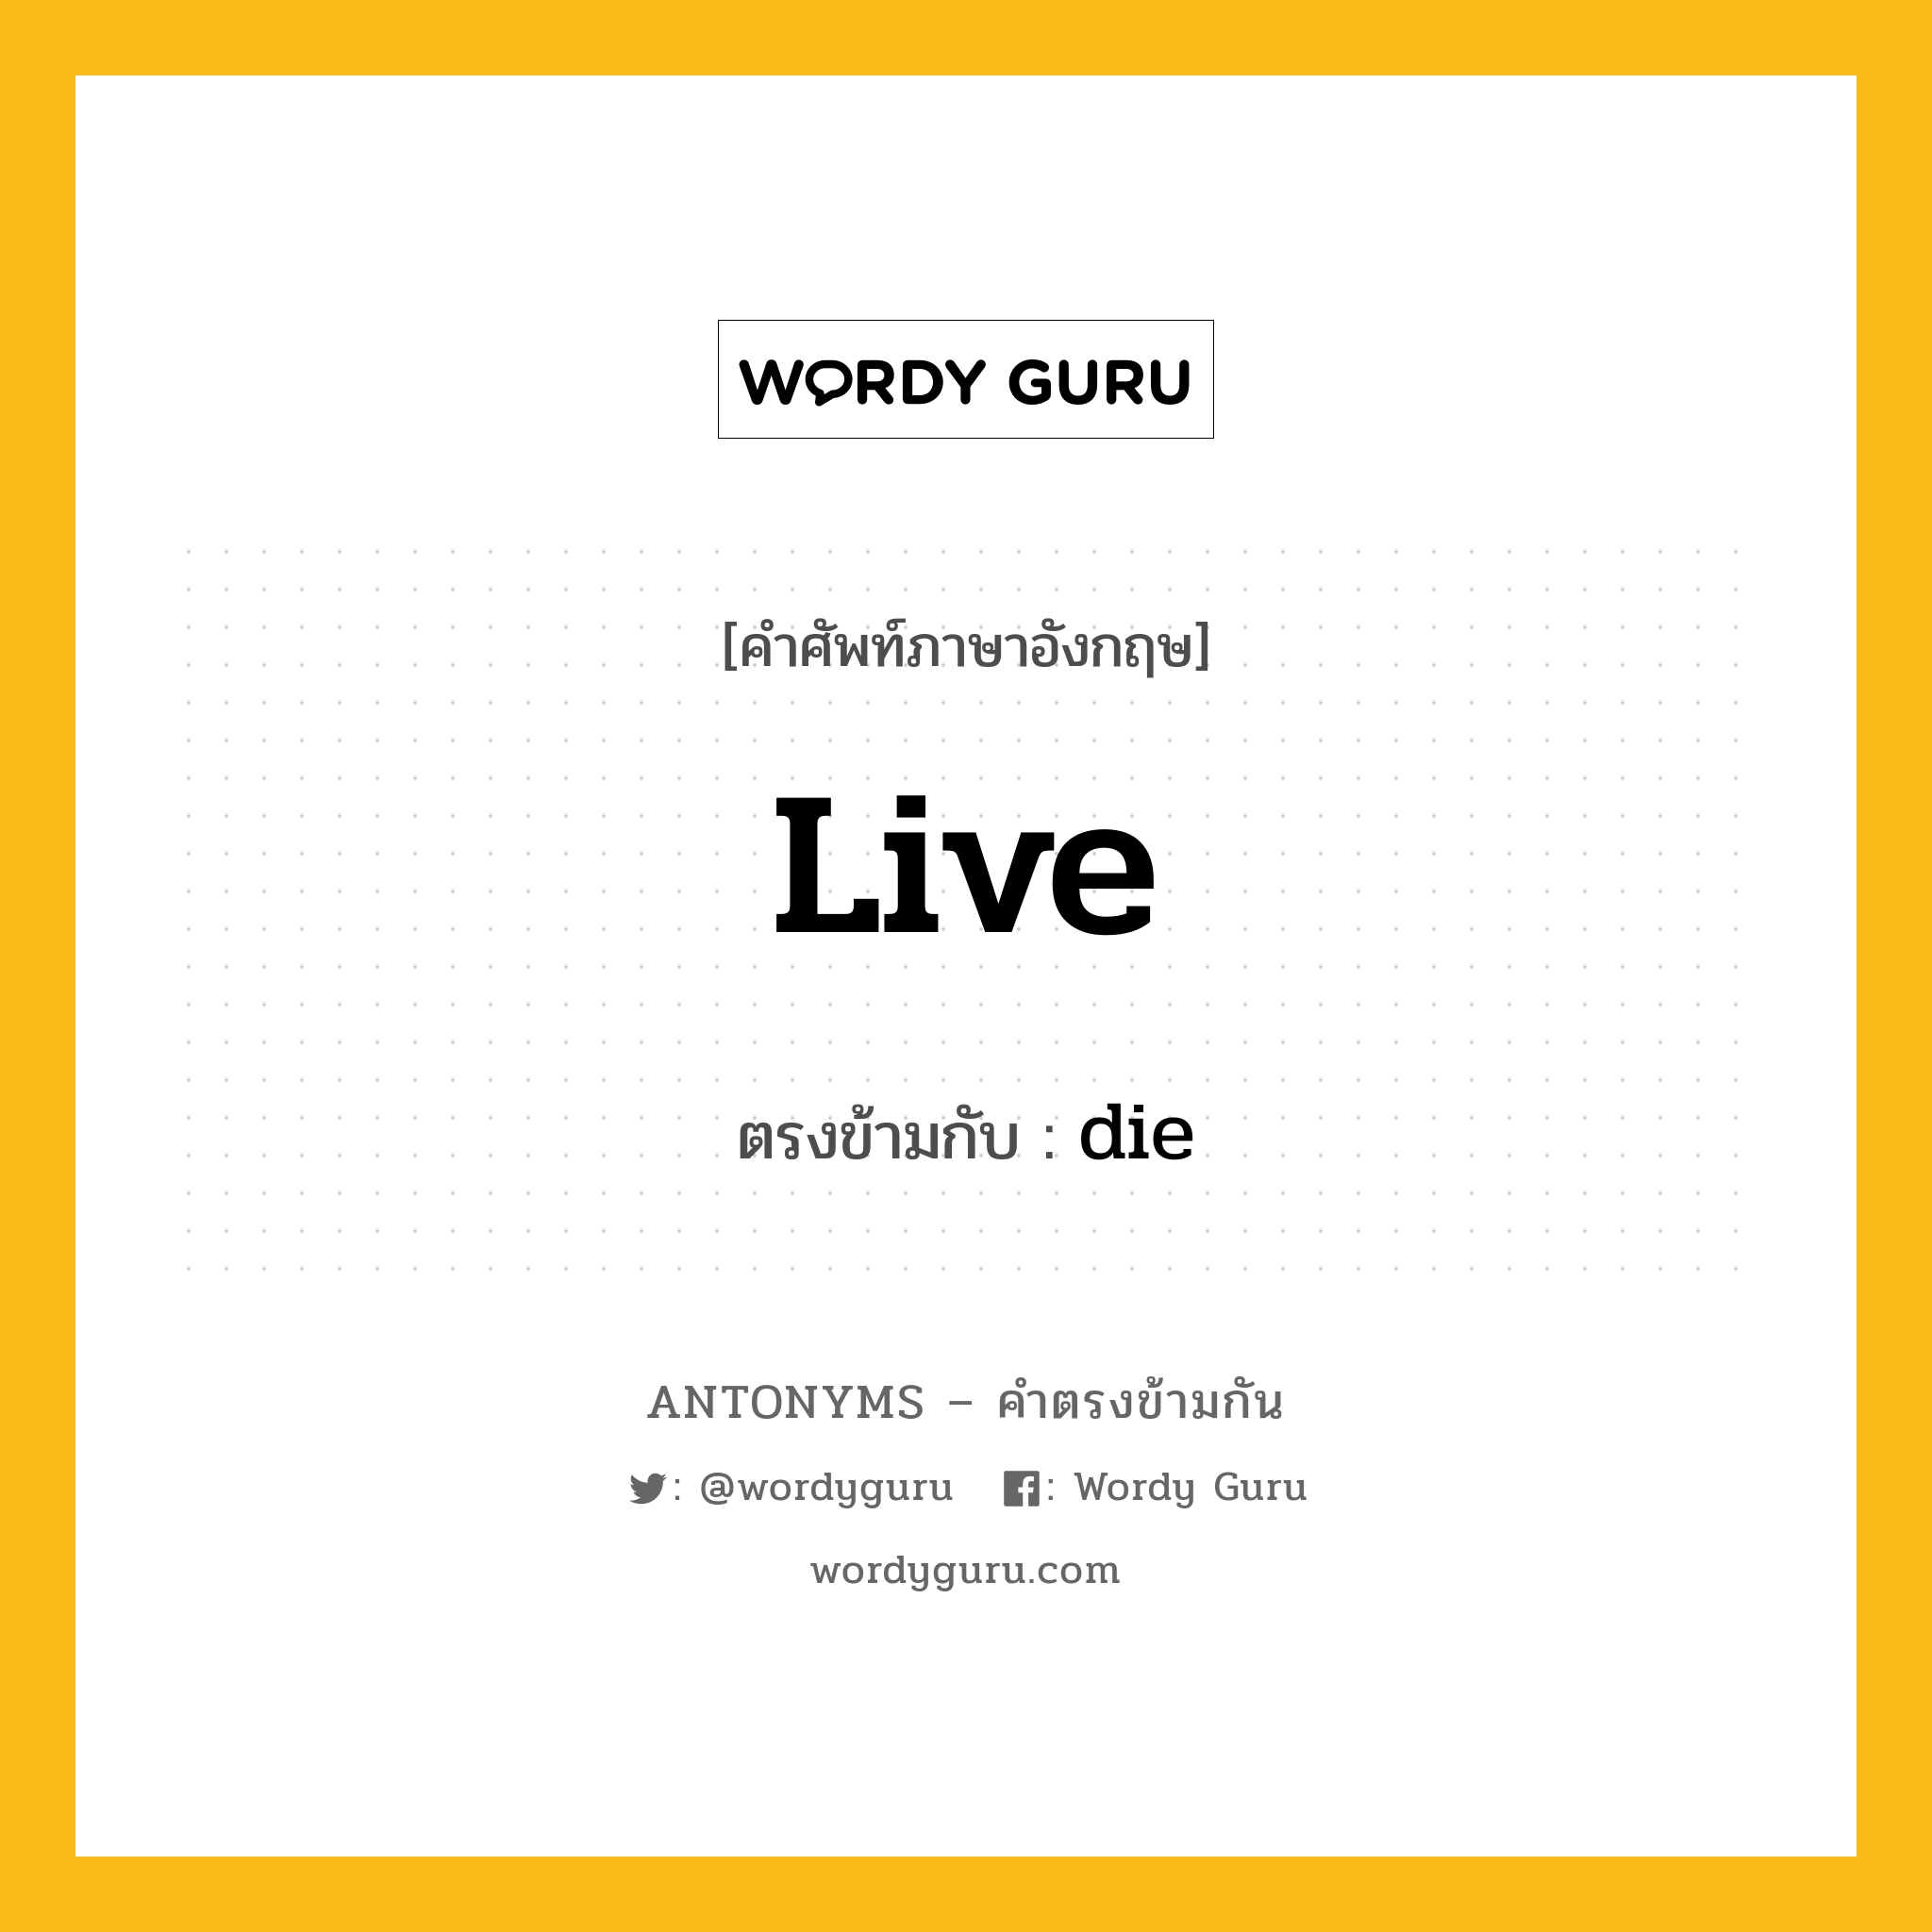 live เป็นคำตรงข้ามกับคำไหนบ้าง?, คำศัพท์ภาษาอังกฤษ live ตรงข้ามกับ die หมวด die